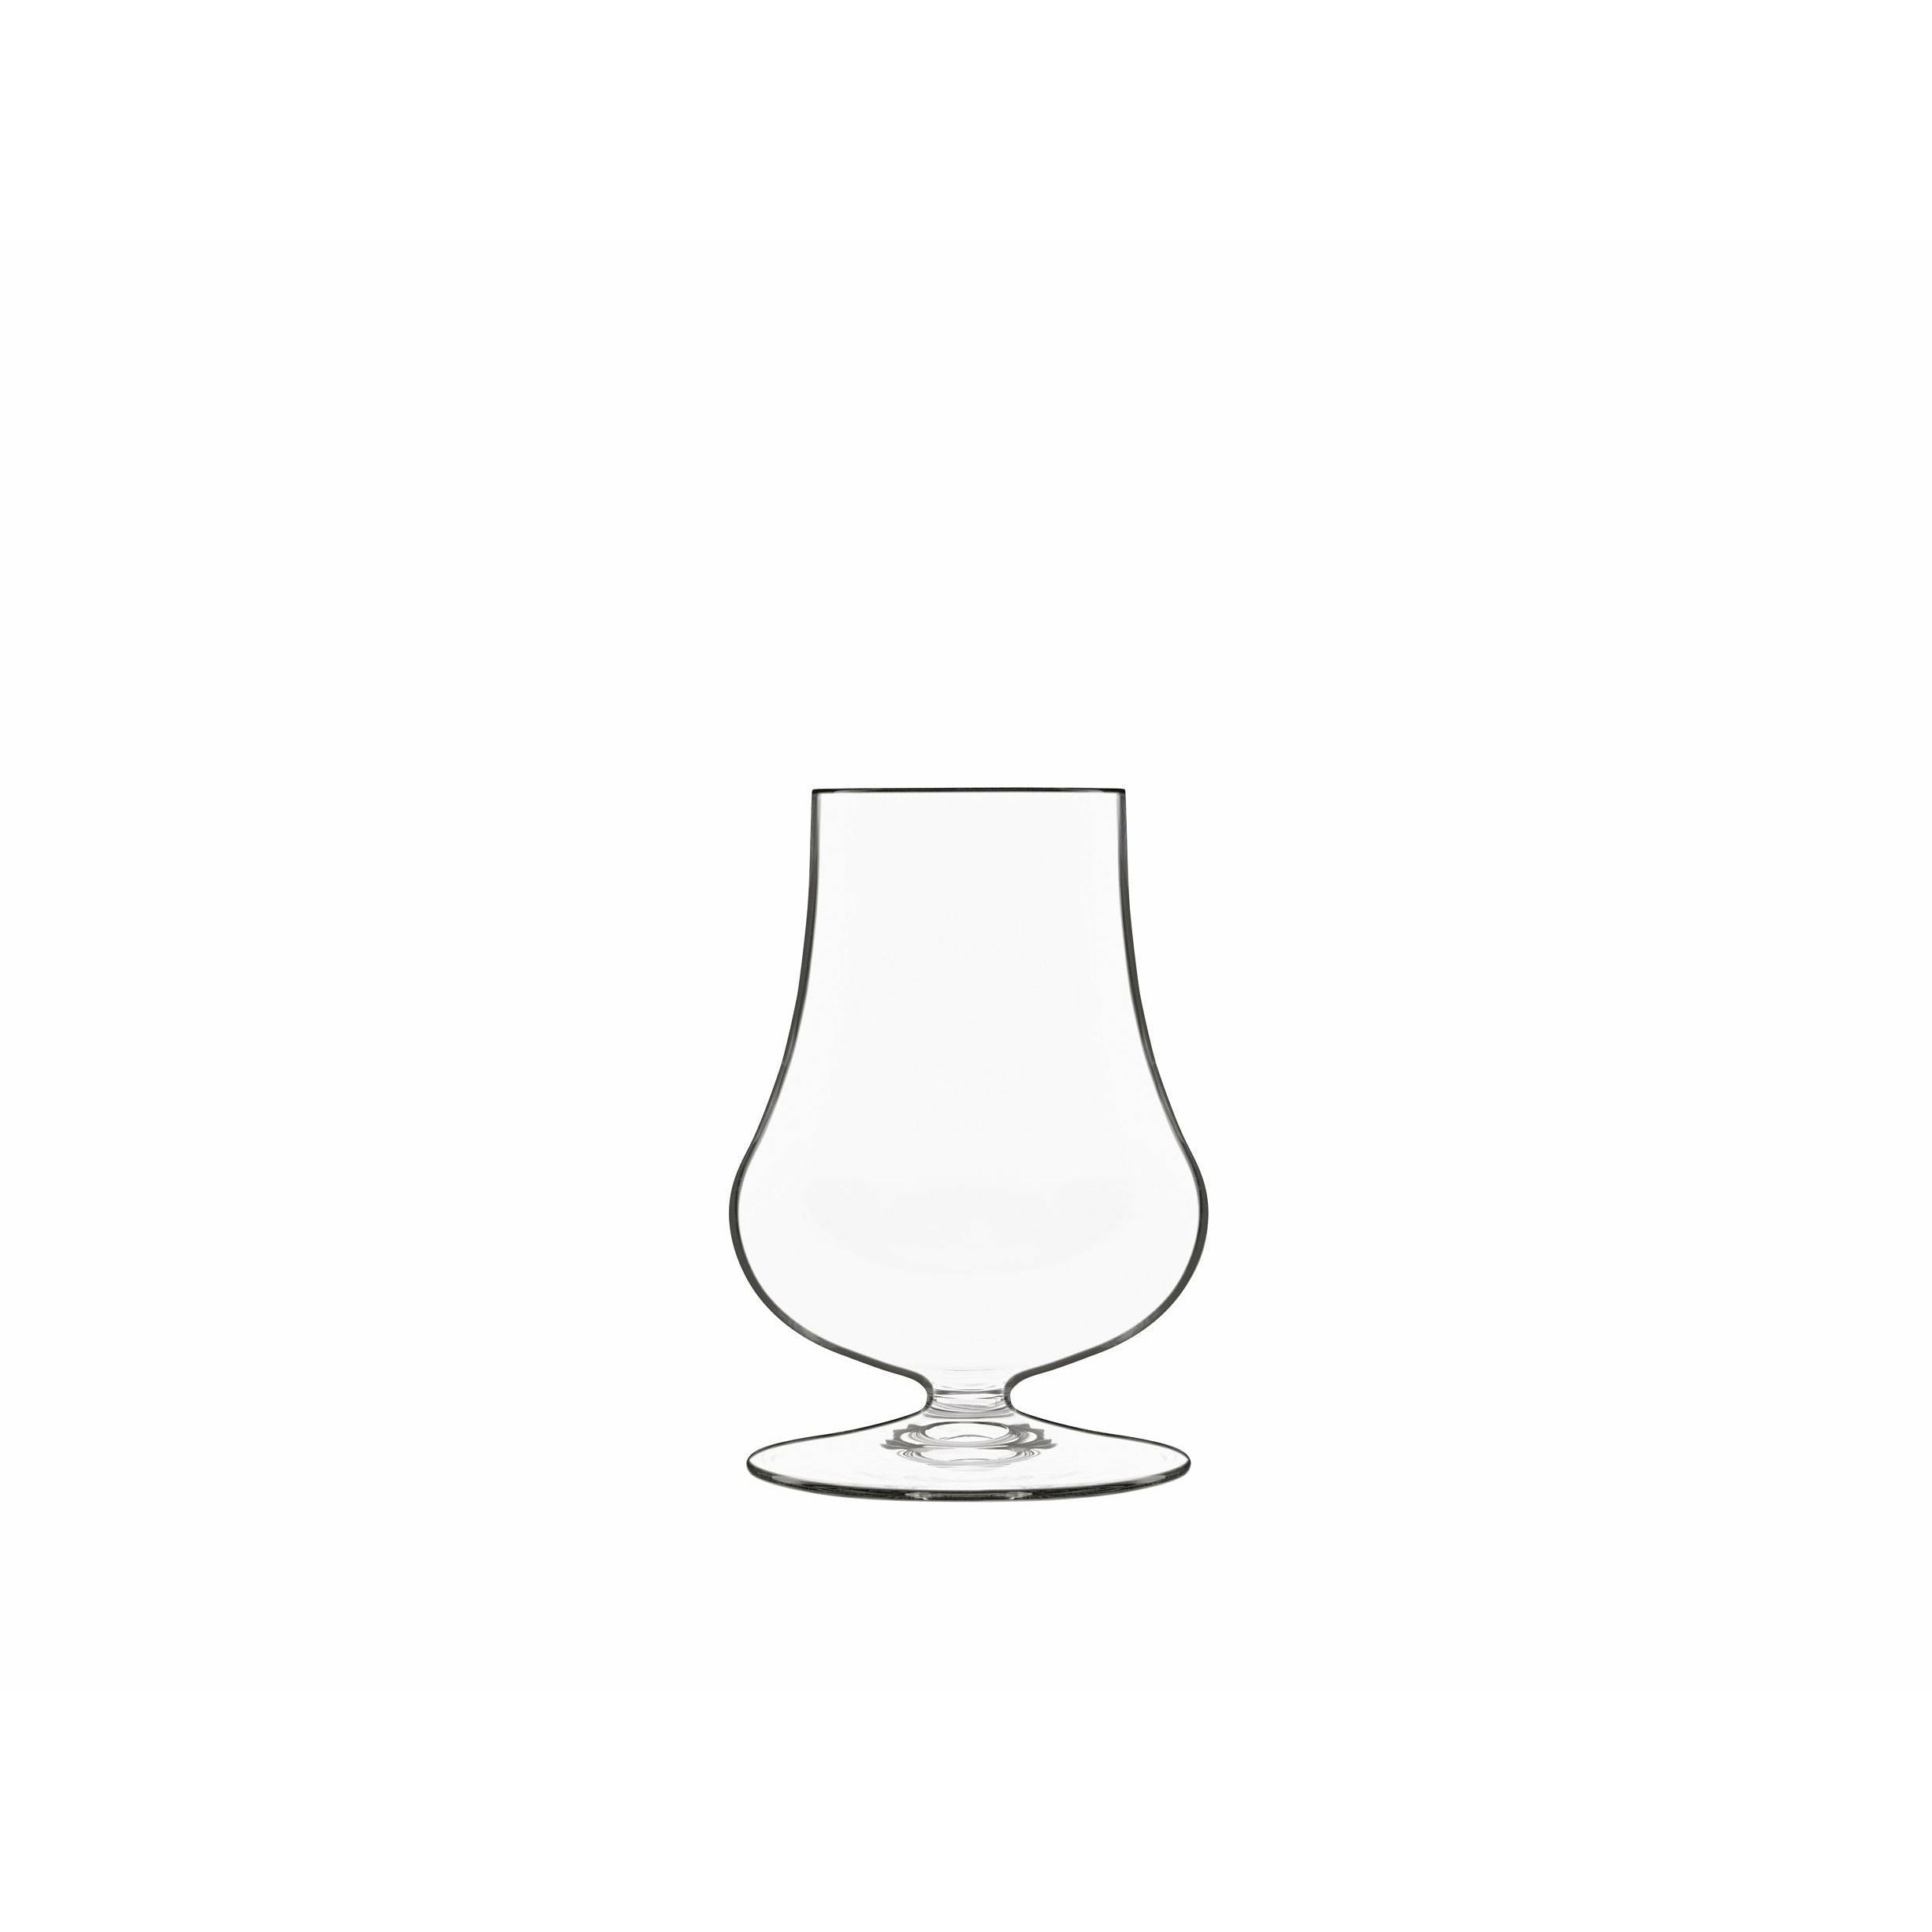 Luigi Bormioli Tentazioni Spirits Glass/whisky szkło do smaku, zestaw 6